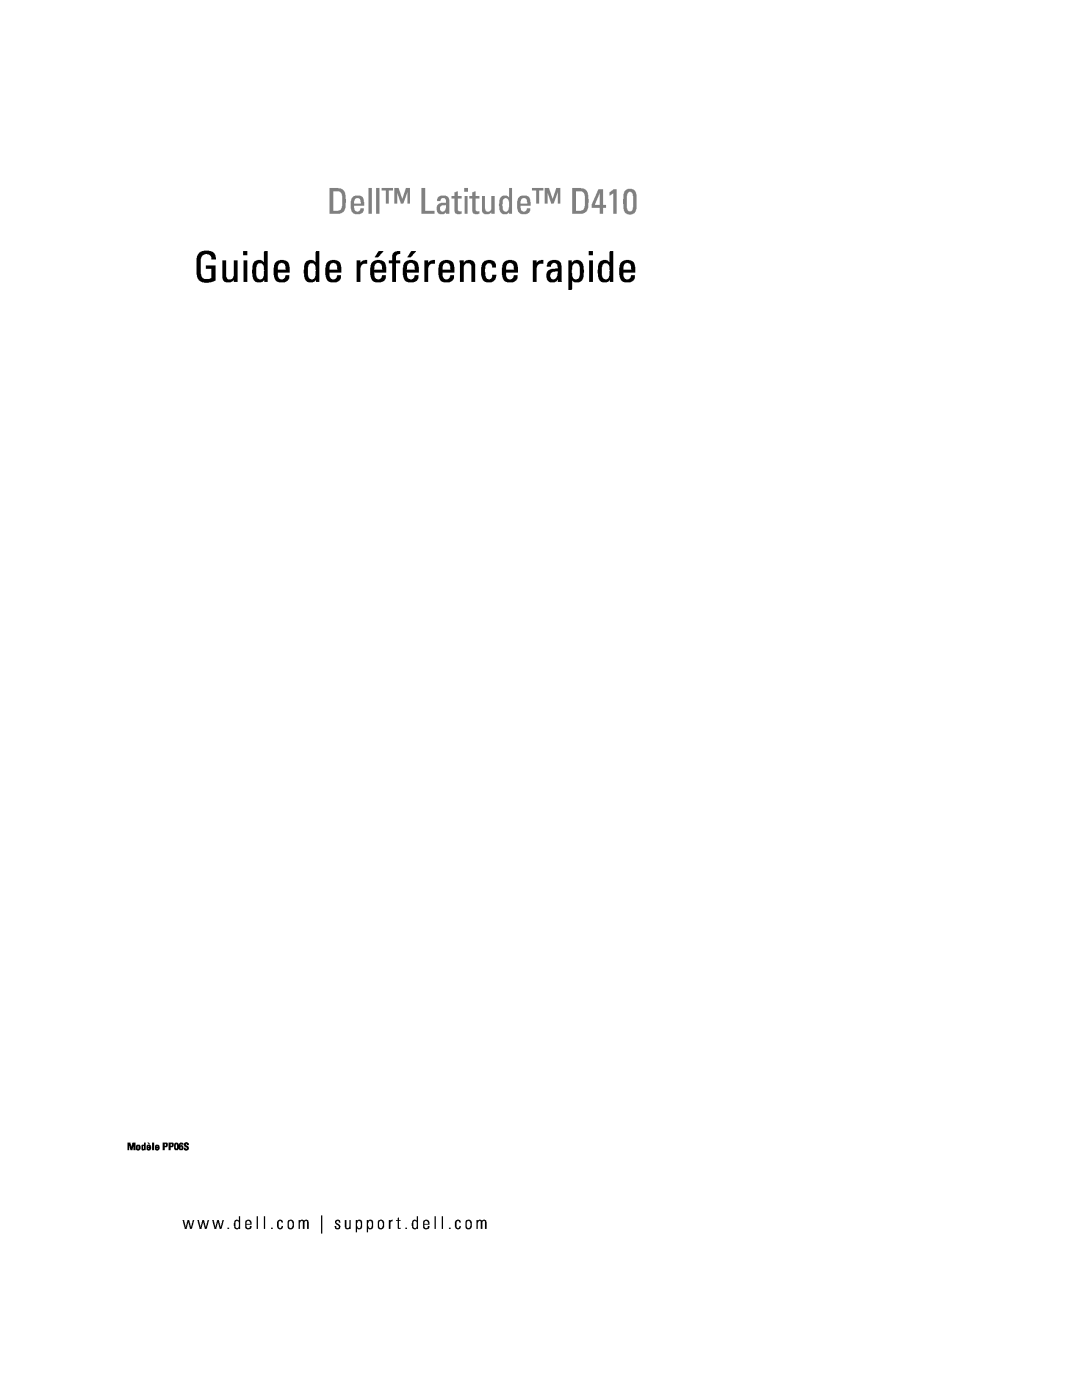 Dell manual Guide de référence rapide, Dell Latitude D410, Modèle PP06S 